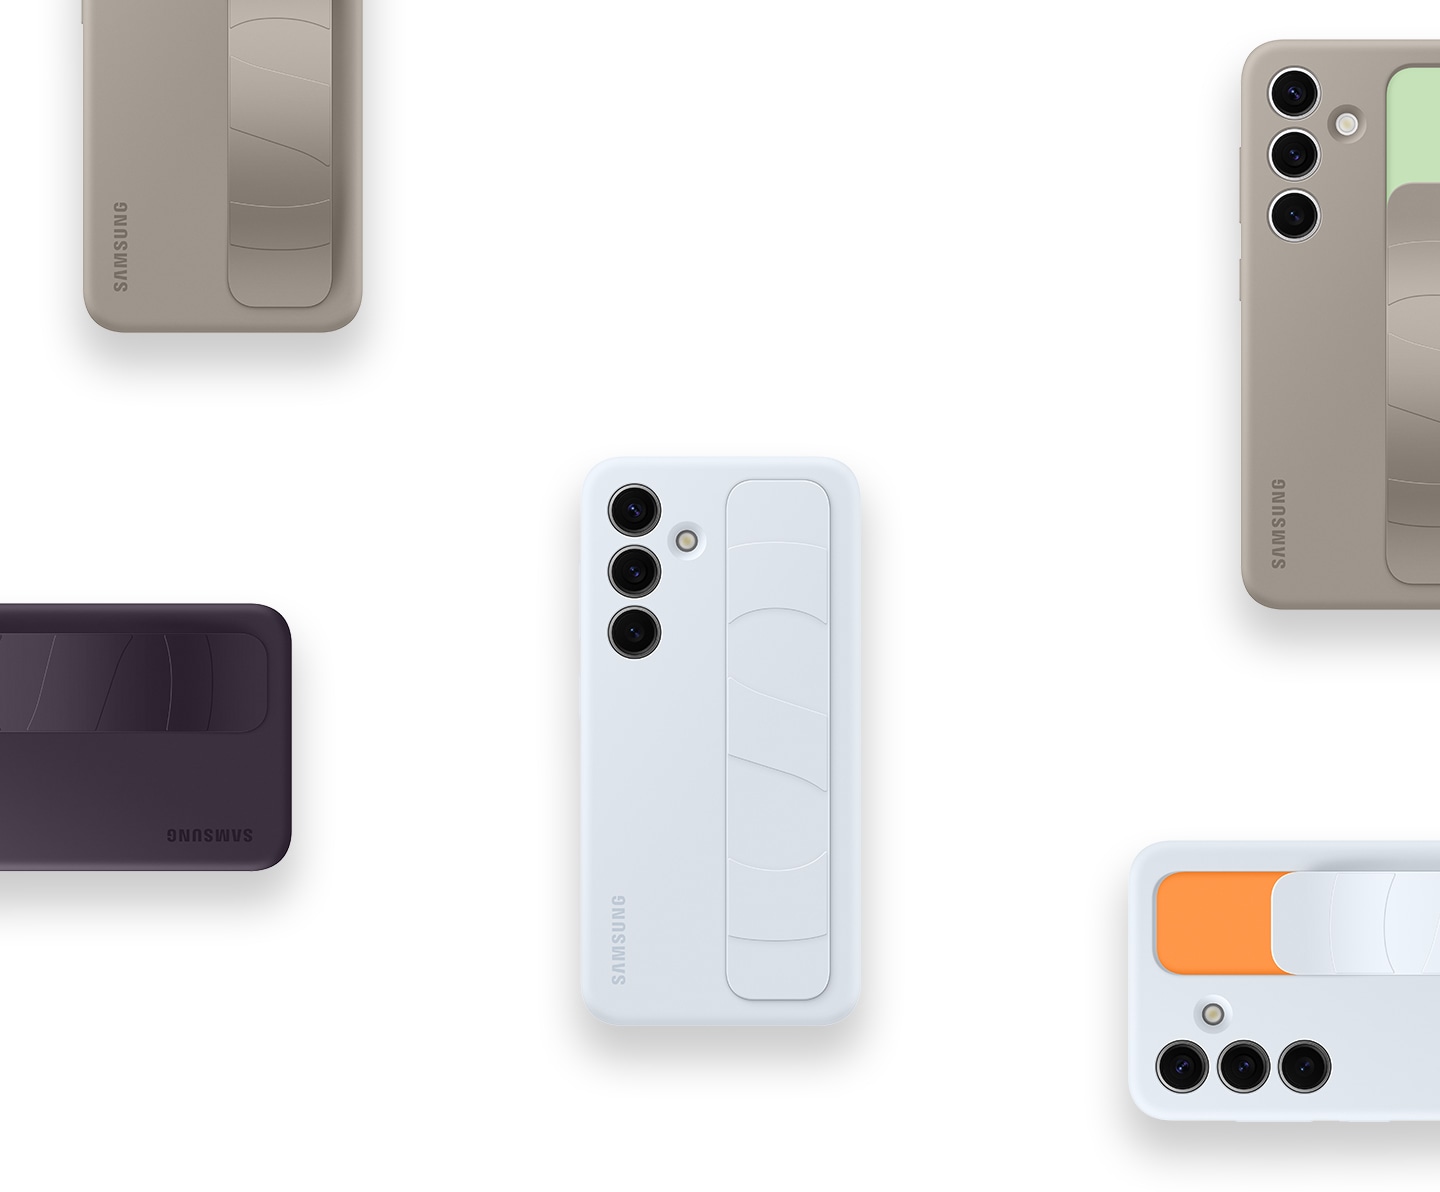 Чехлы Standing Grip Case для Galaxy S24 в светло-голубом, серо-коричневым и темно-фиолетовом исполнении расположены в упорядоченном порядке, демонстрируя универсальность продукта, показанного со всех сторон. Мы видим пять частей телефона, чтобы получить полную картину. 